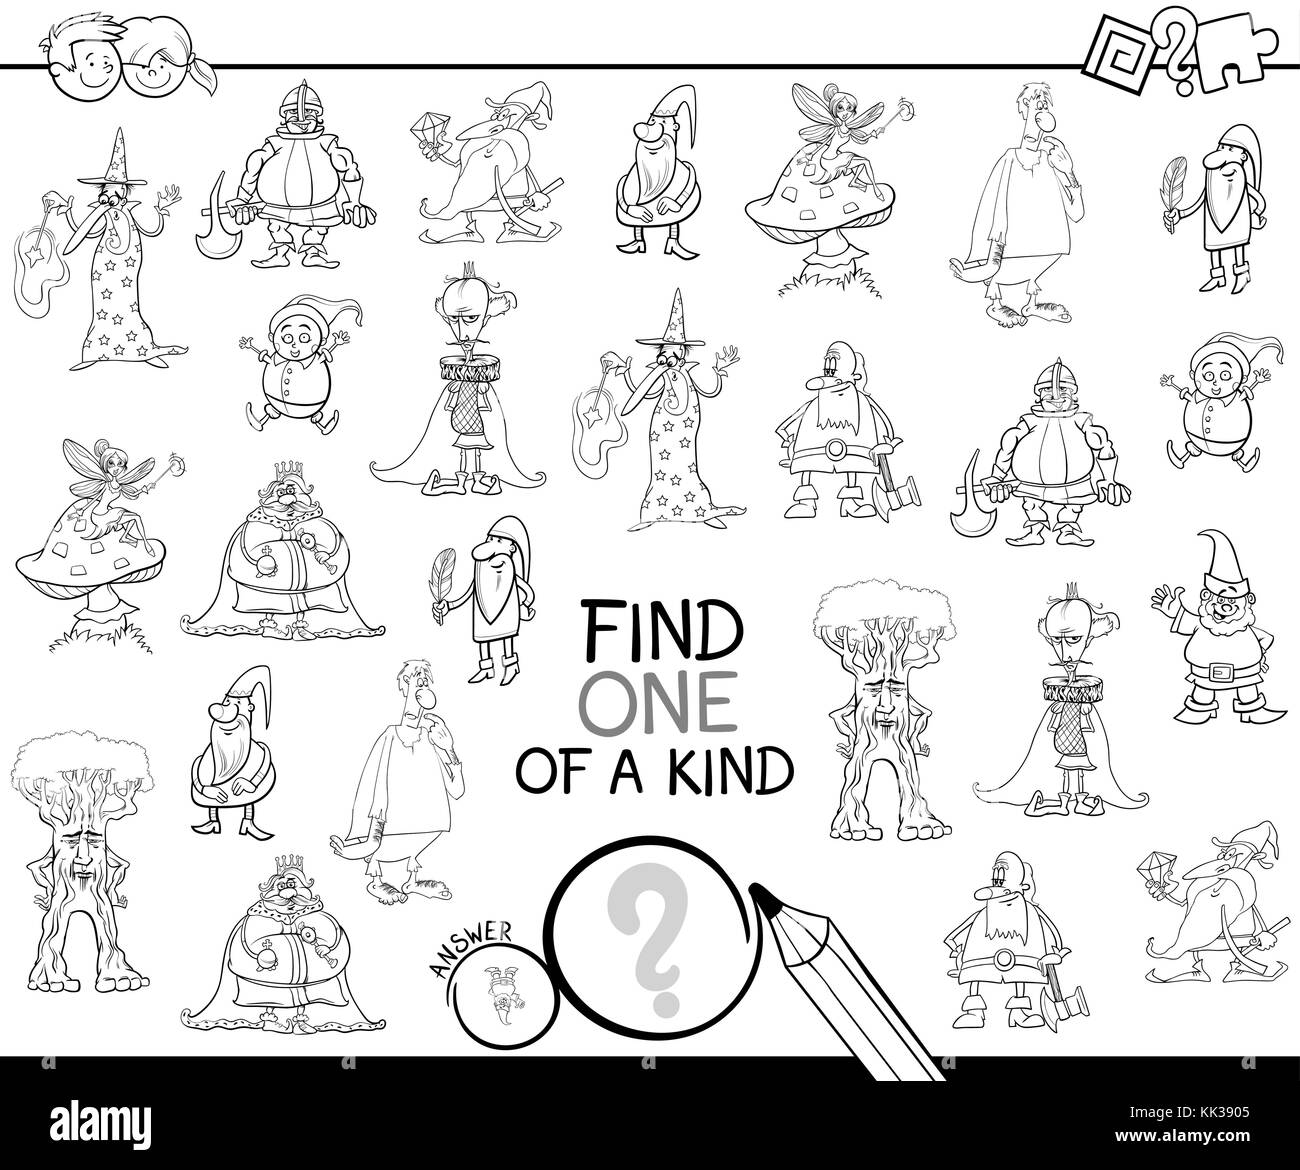 Bianco e nero cartoon illustrazione di trovare un tipo di attività educativa gioco per bambini con personaggi di fantasia libro da colorare Illustrazione Vettoriale